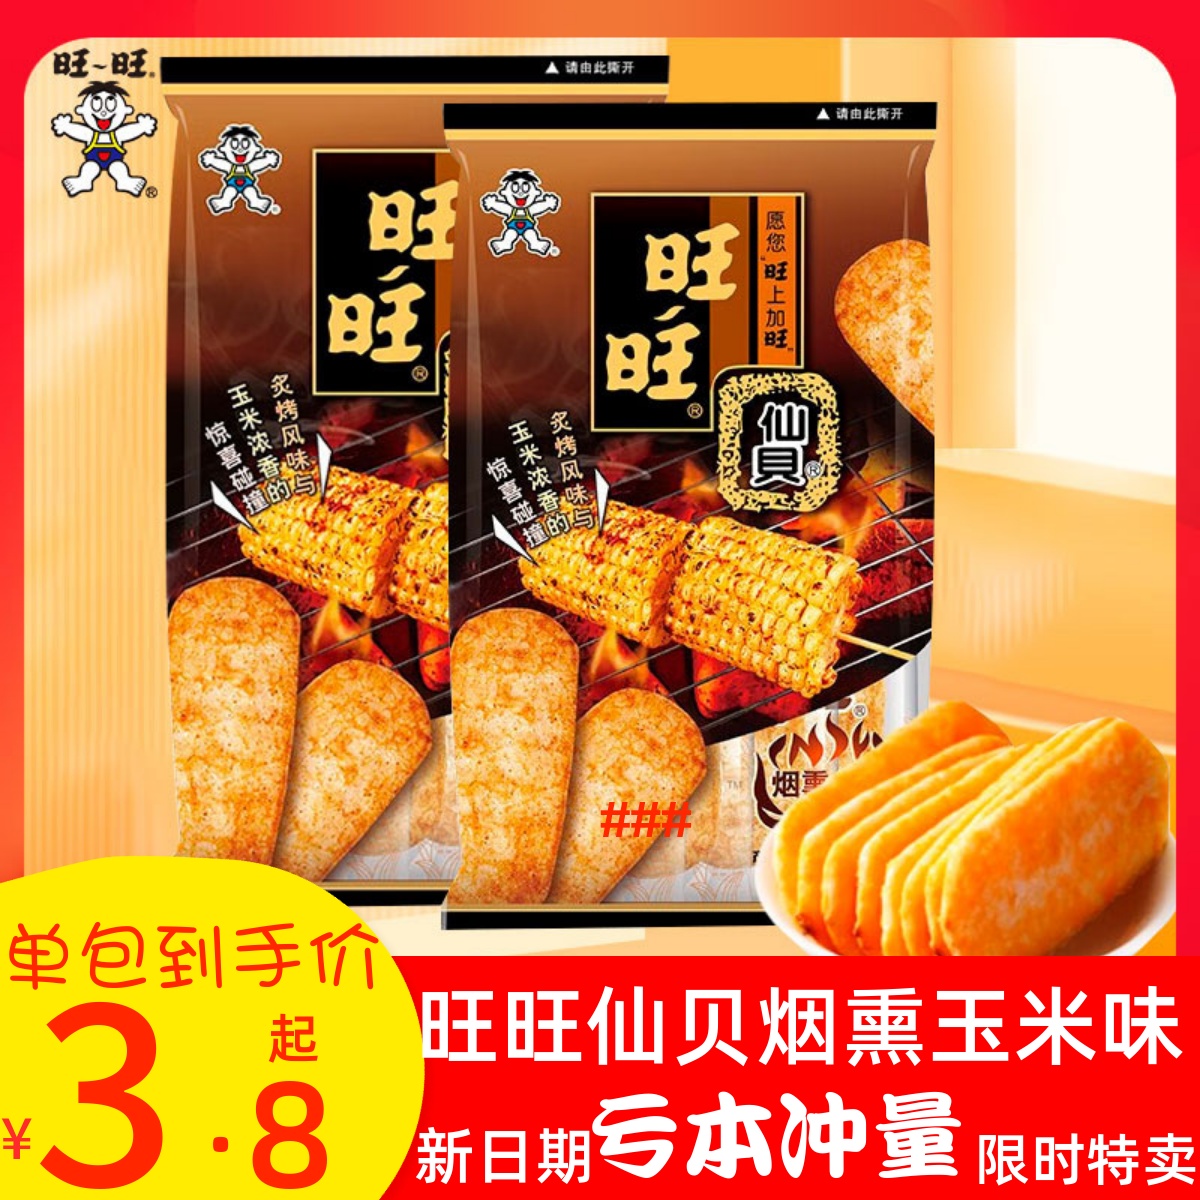 旺旺仙贝新品烟熏炙烤玉米味儿童办公米果零食饼干米饼 56g*10包